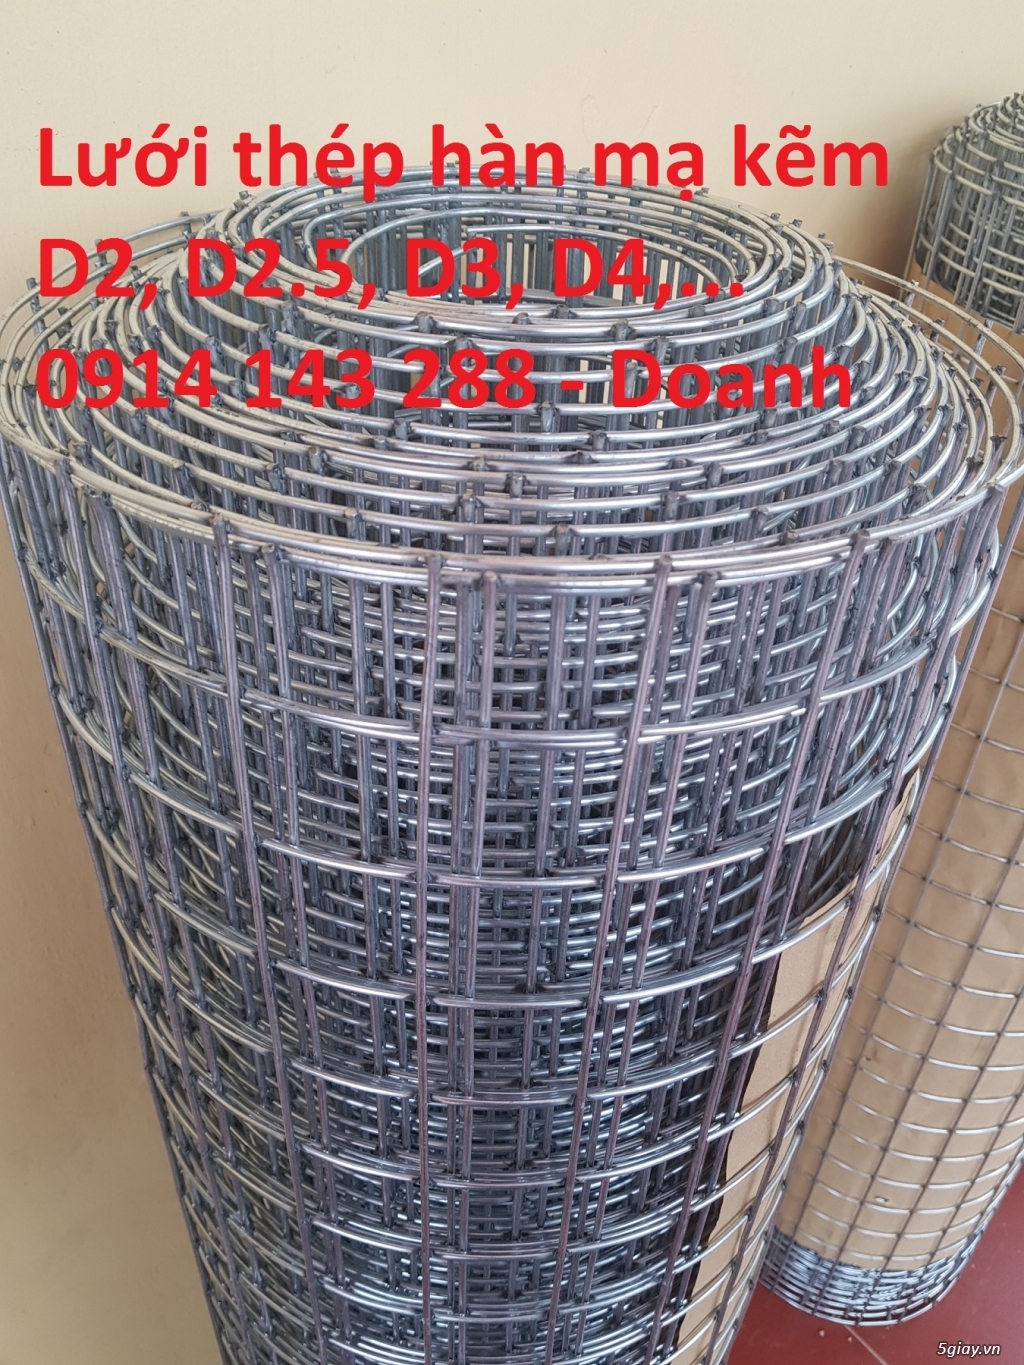 Lưới thép hàn ô vuông mạ kẽm sợi 2.5mm giá sản xuất  - 0914 143 288 - 6